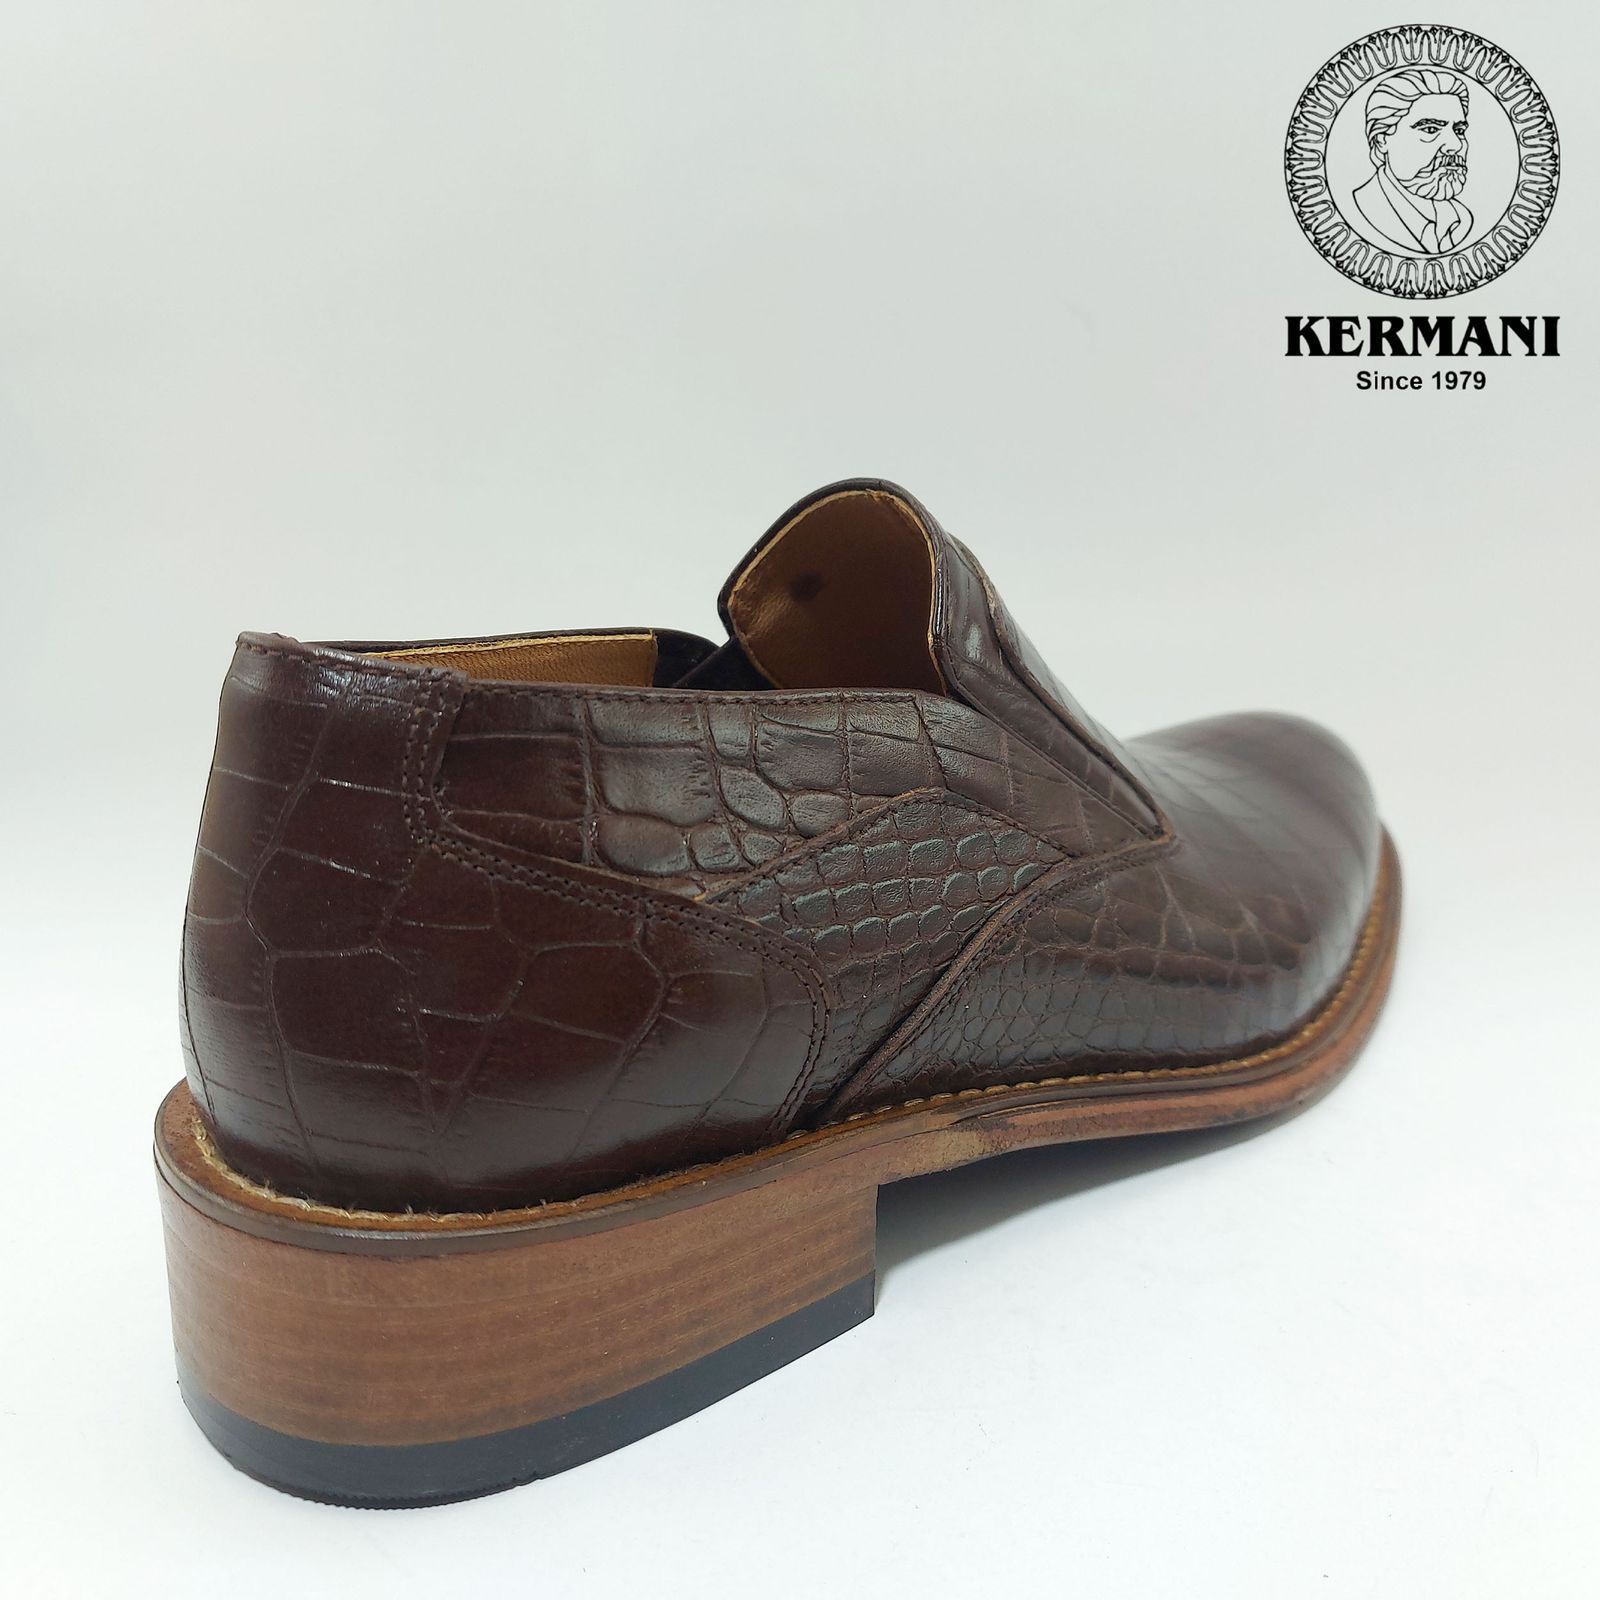 کفش مردانه کرمانی مدل تمام چرم دستدوز کد 350 رنگ قهوه ای -  - 2